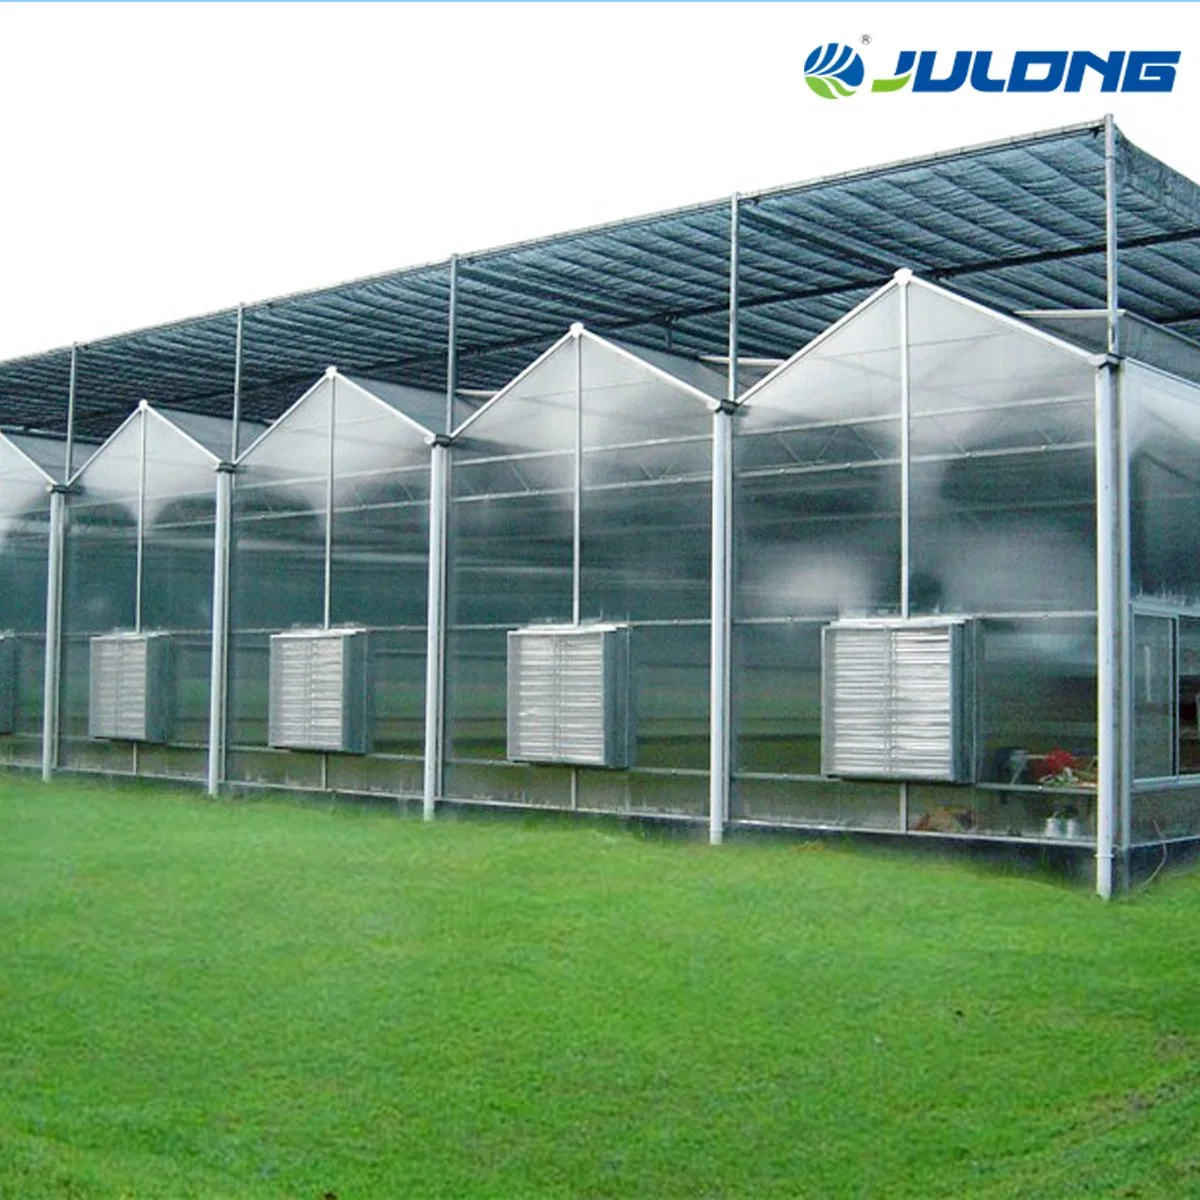 La agricultura de invernadero hidropónico de policarbonato Julong